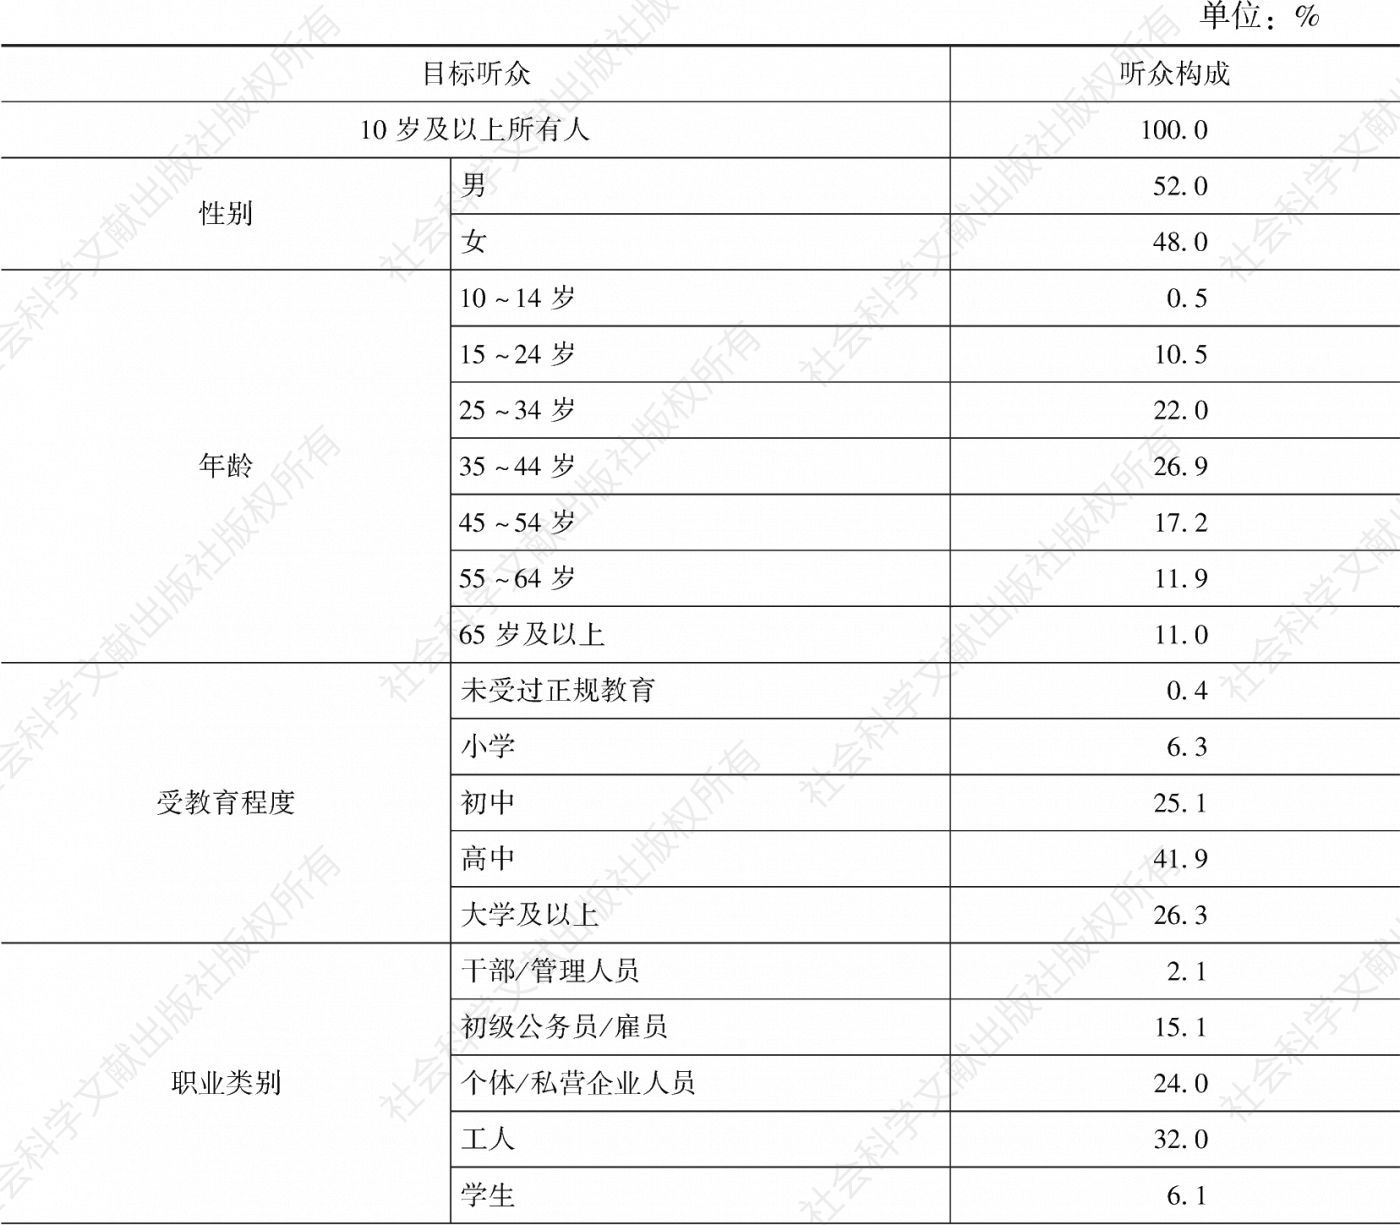 表4.4.3 2020年重庆市场听众构成